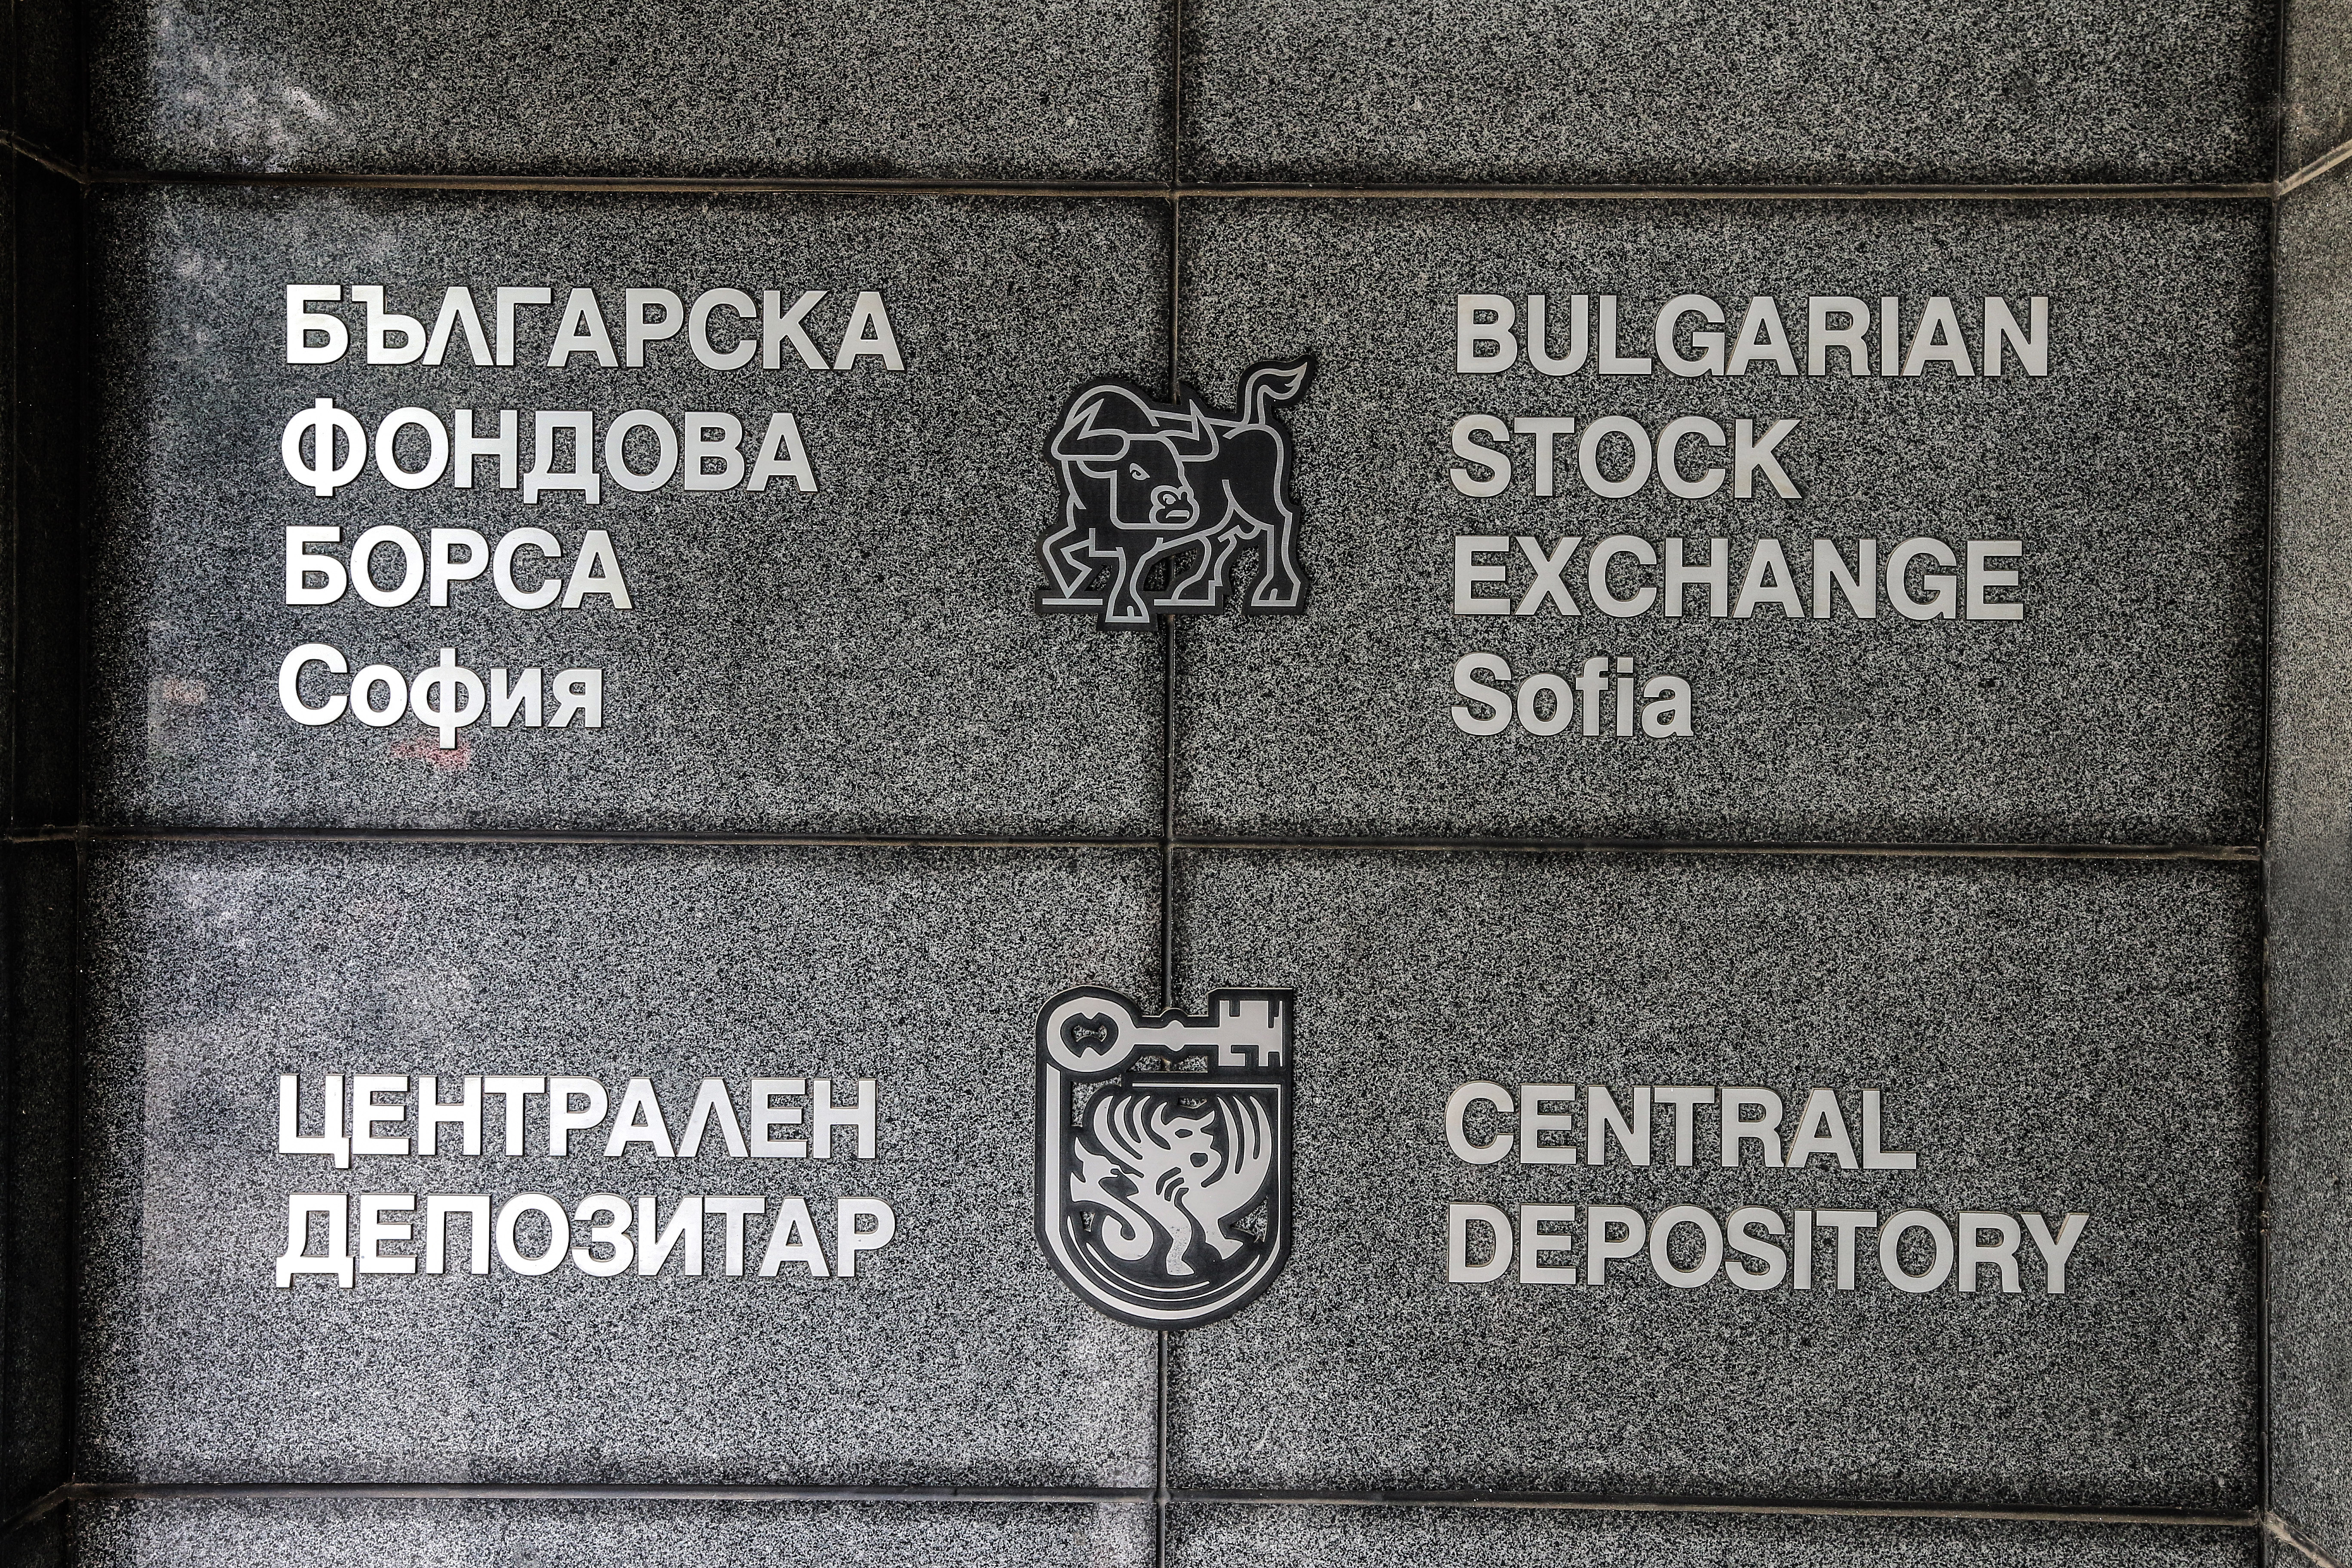 Основните индекси на Българска фондова борса (БФБ) продължават да бъдат оптимистични